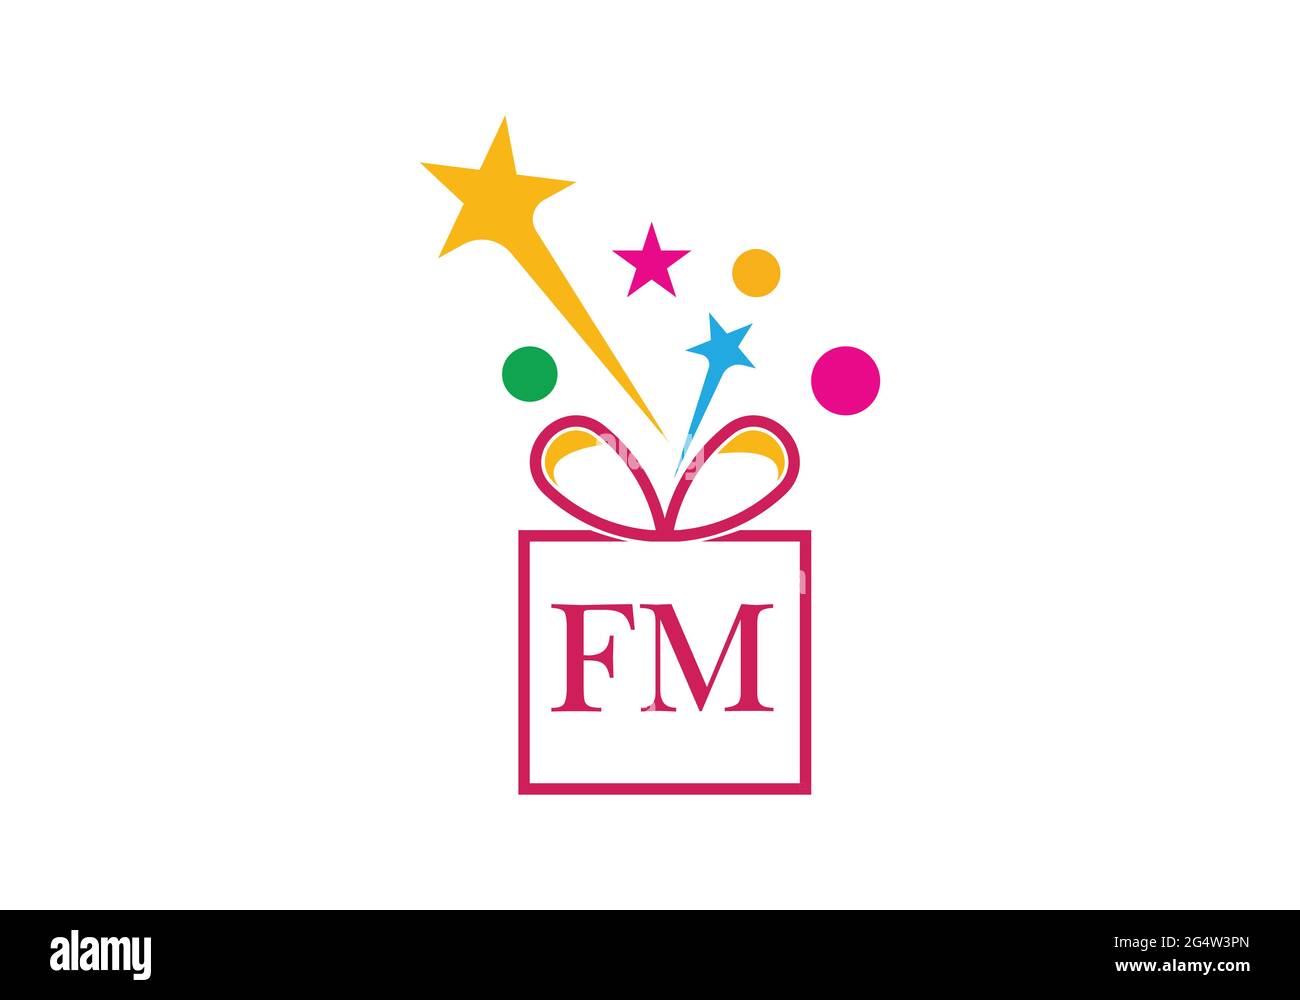 Boîte cadeau, lettre lettre lettre lettre lettre lettre lettre F M logo icône en or ou or pour le design de marque de luxe pour l'entreprise et les affaires Illustration de Vecteur